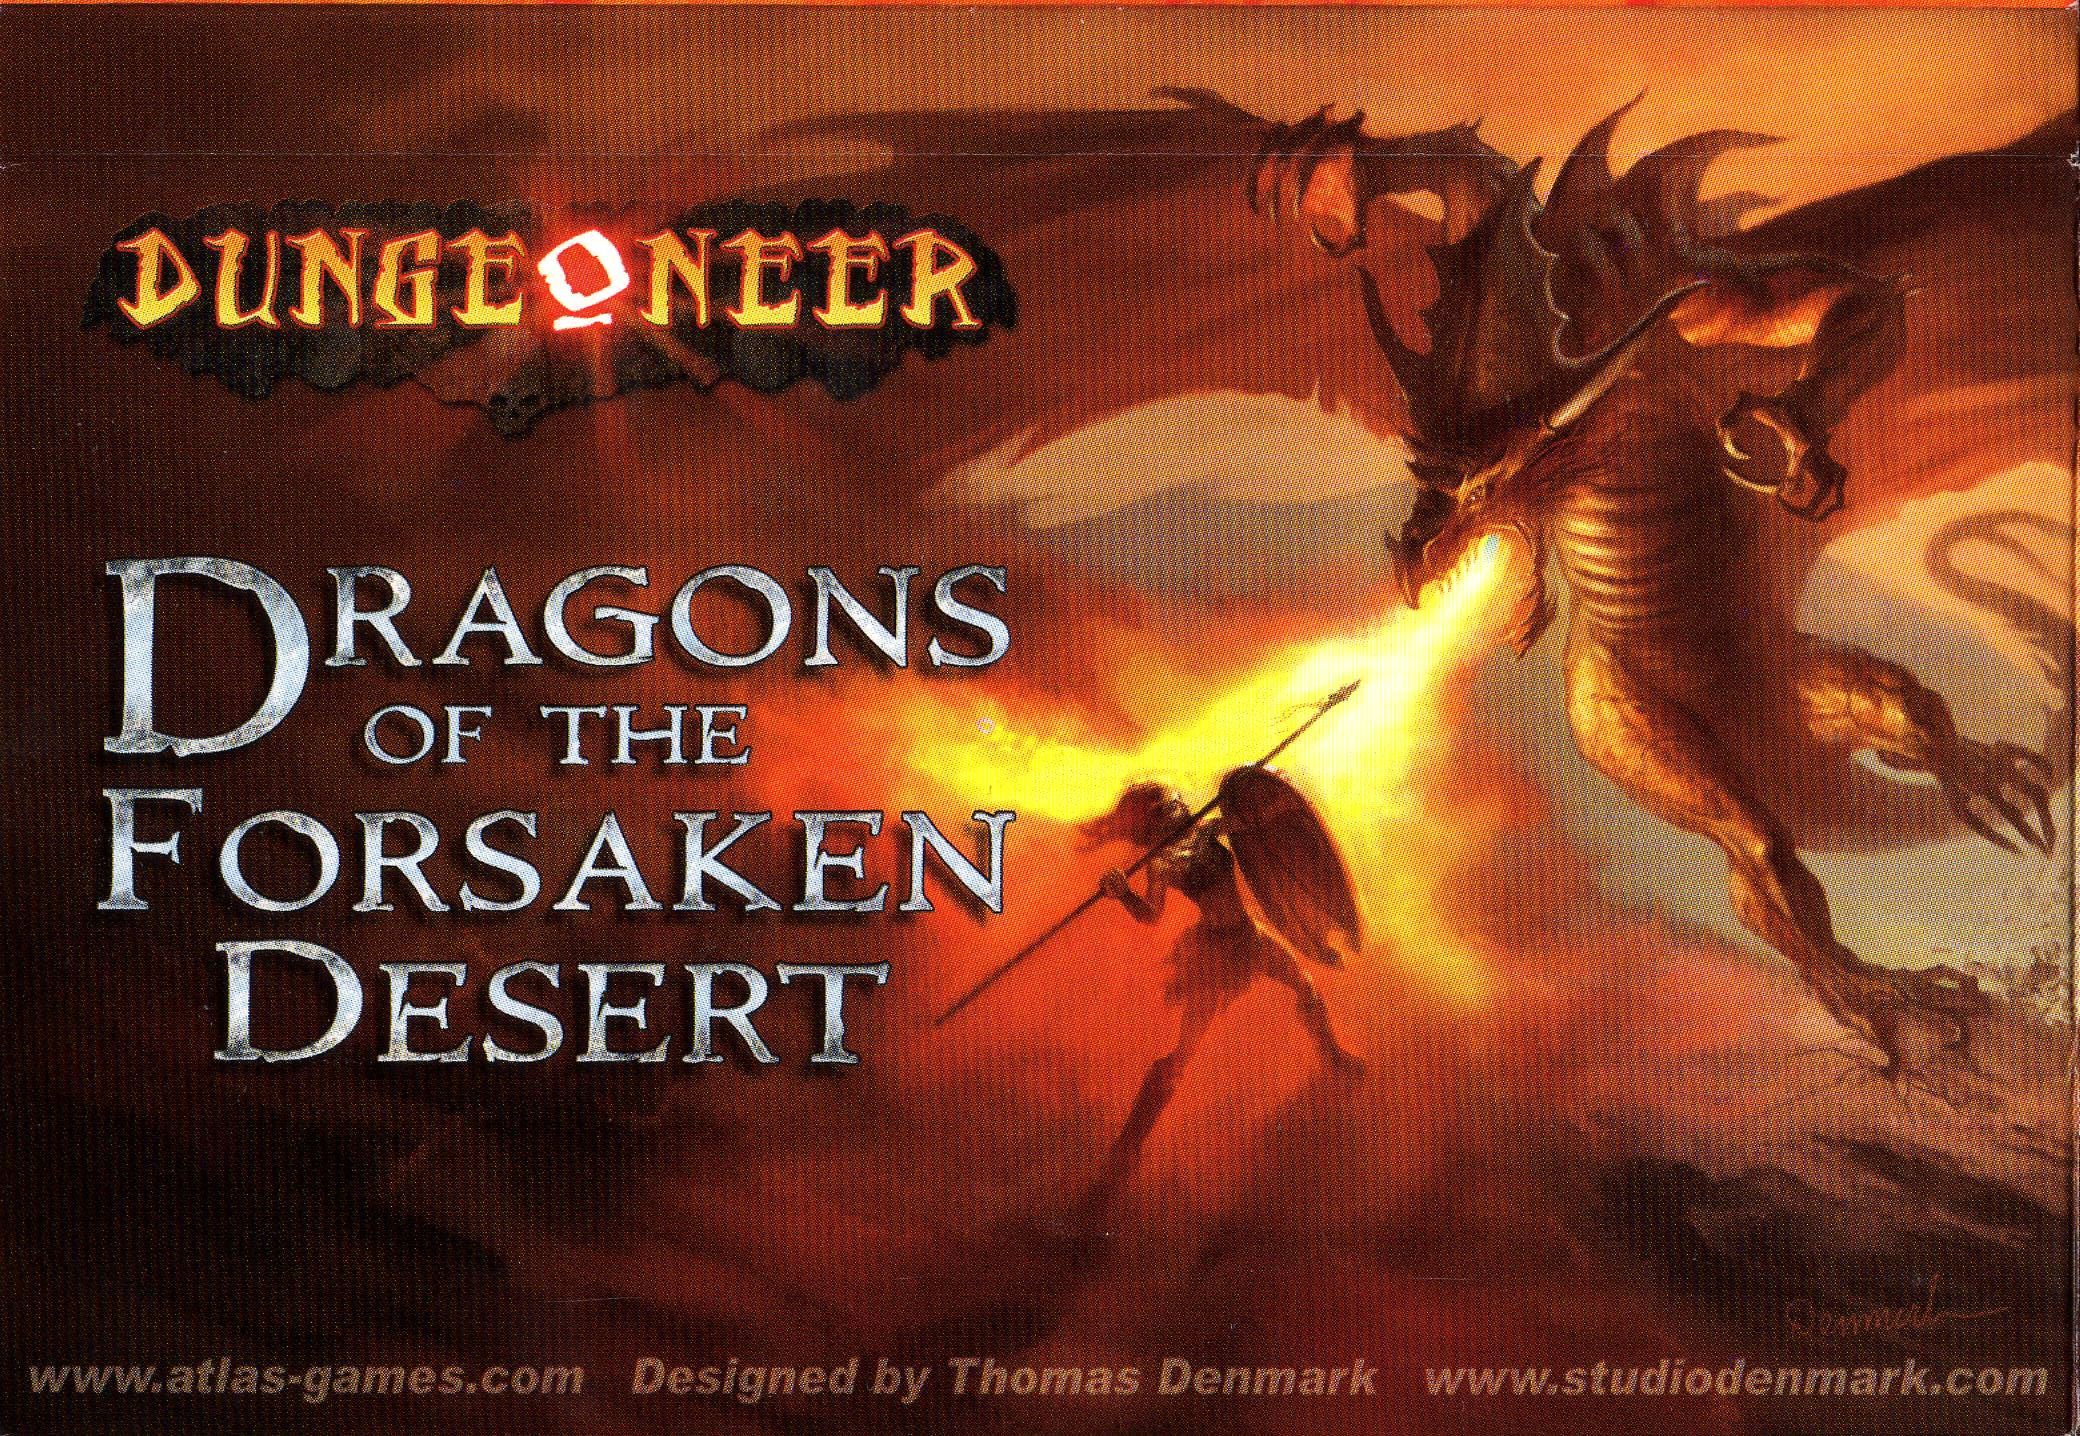 Dungeoneer: Dragons of the Forsaken Desert